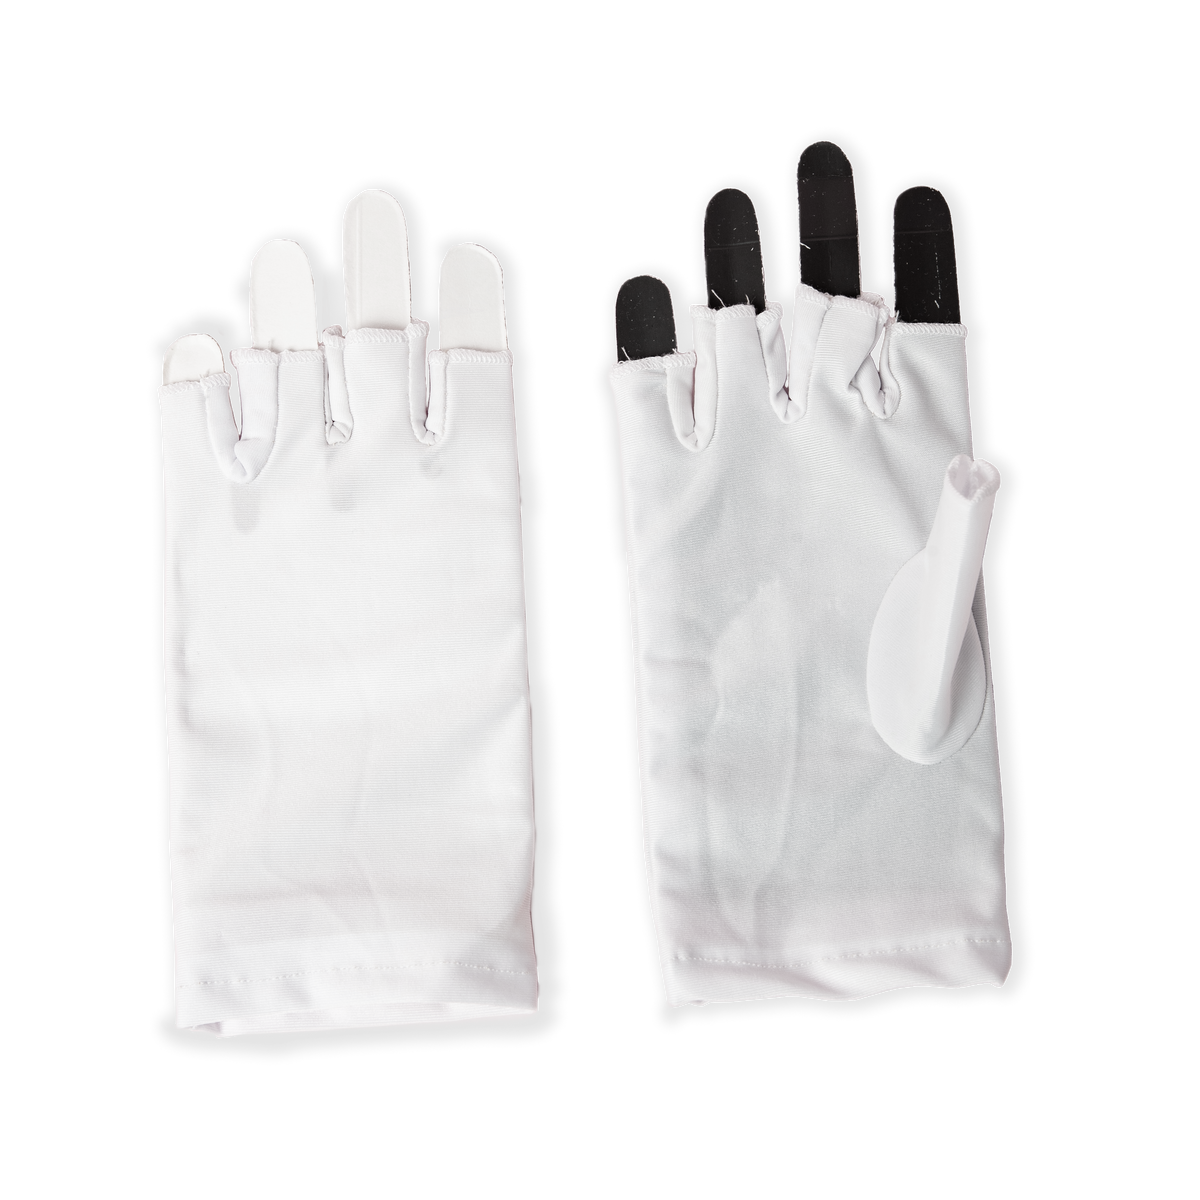 UV Protection fingerless gloves